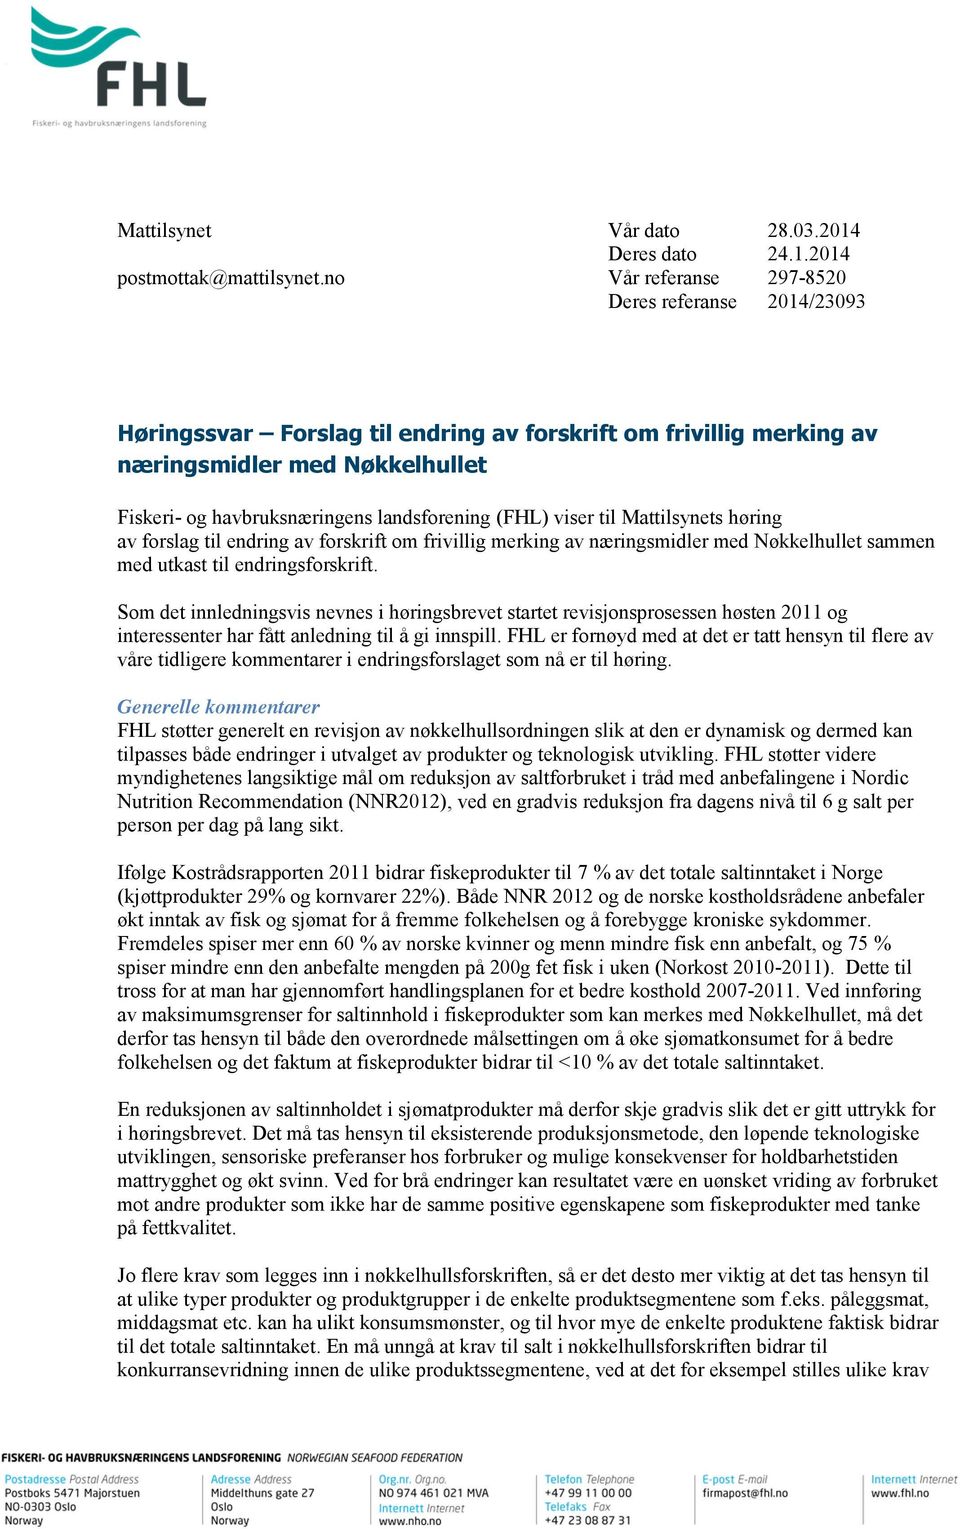 (FHL) viser til Mattilsynets høring av forslag til endring av forskrift om frivillig merking av næringsmidler med Nøkkelhullet sammen med utkast til endringsforskrift.